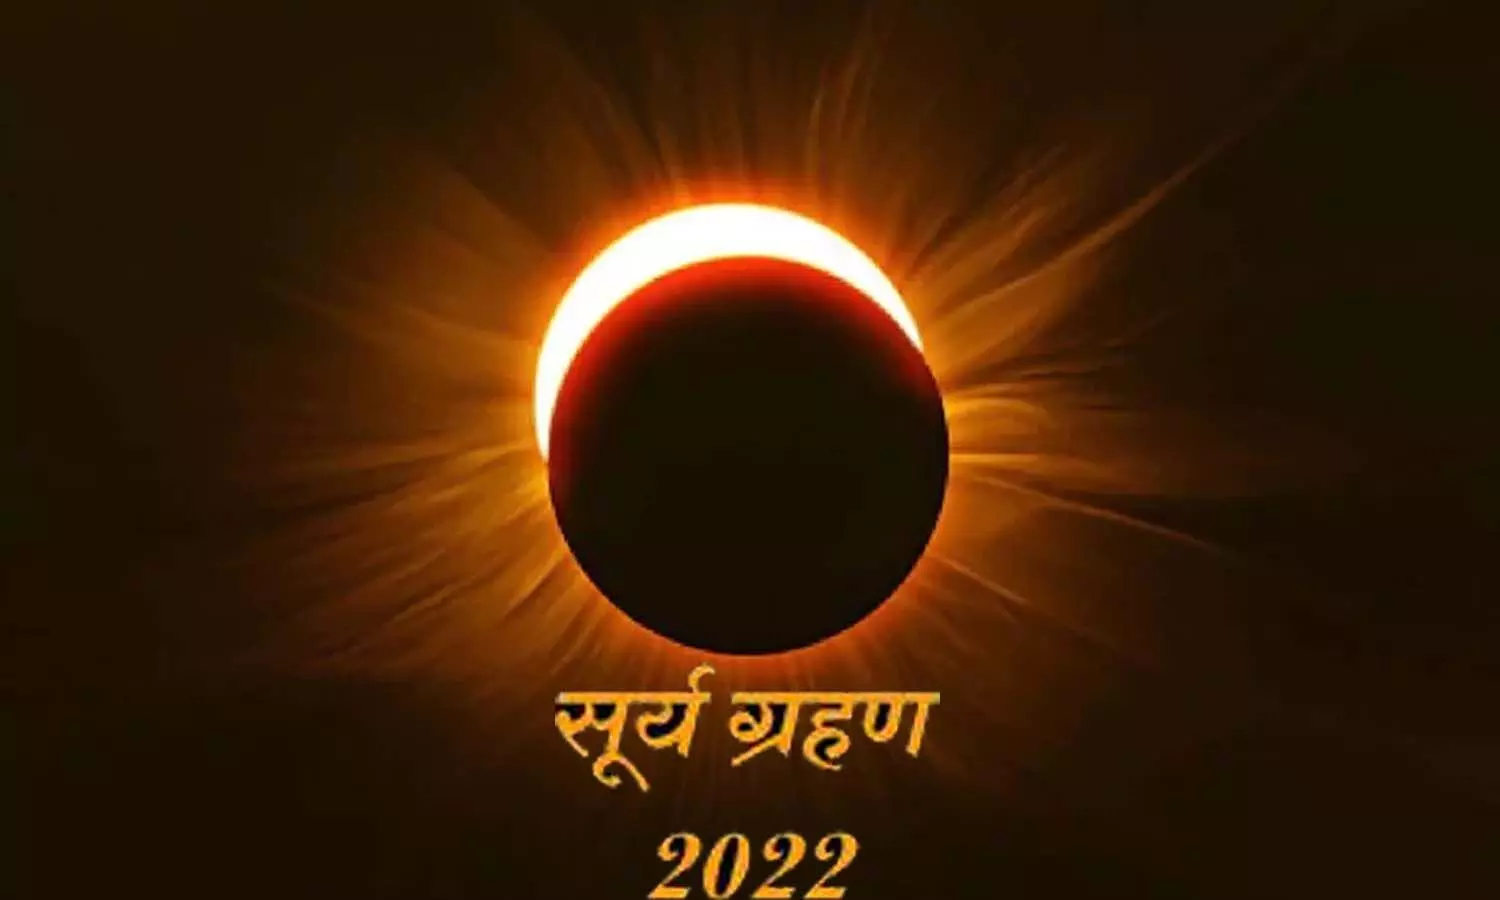 Surya Grahan 2022 Today: सूर्य ग्रहण से भारी तबाही की आशंका, परमाणु विश्व युद्ध और महामारियों का रहेगा प्रकोप